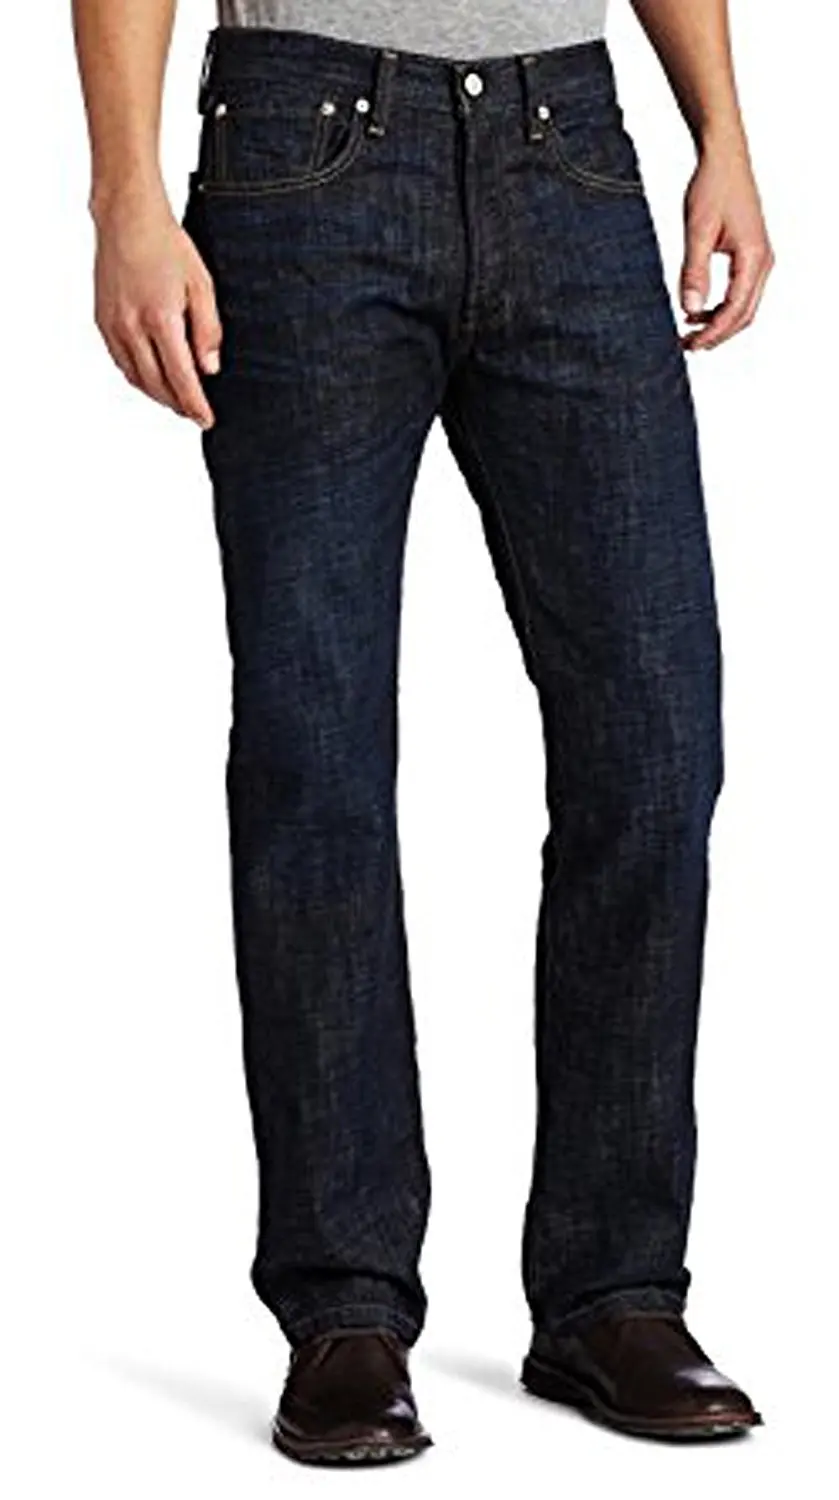 джинсы levis мужские фото